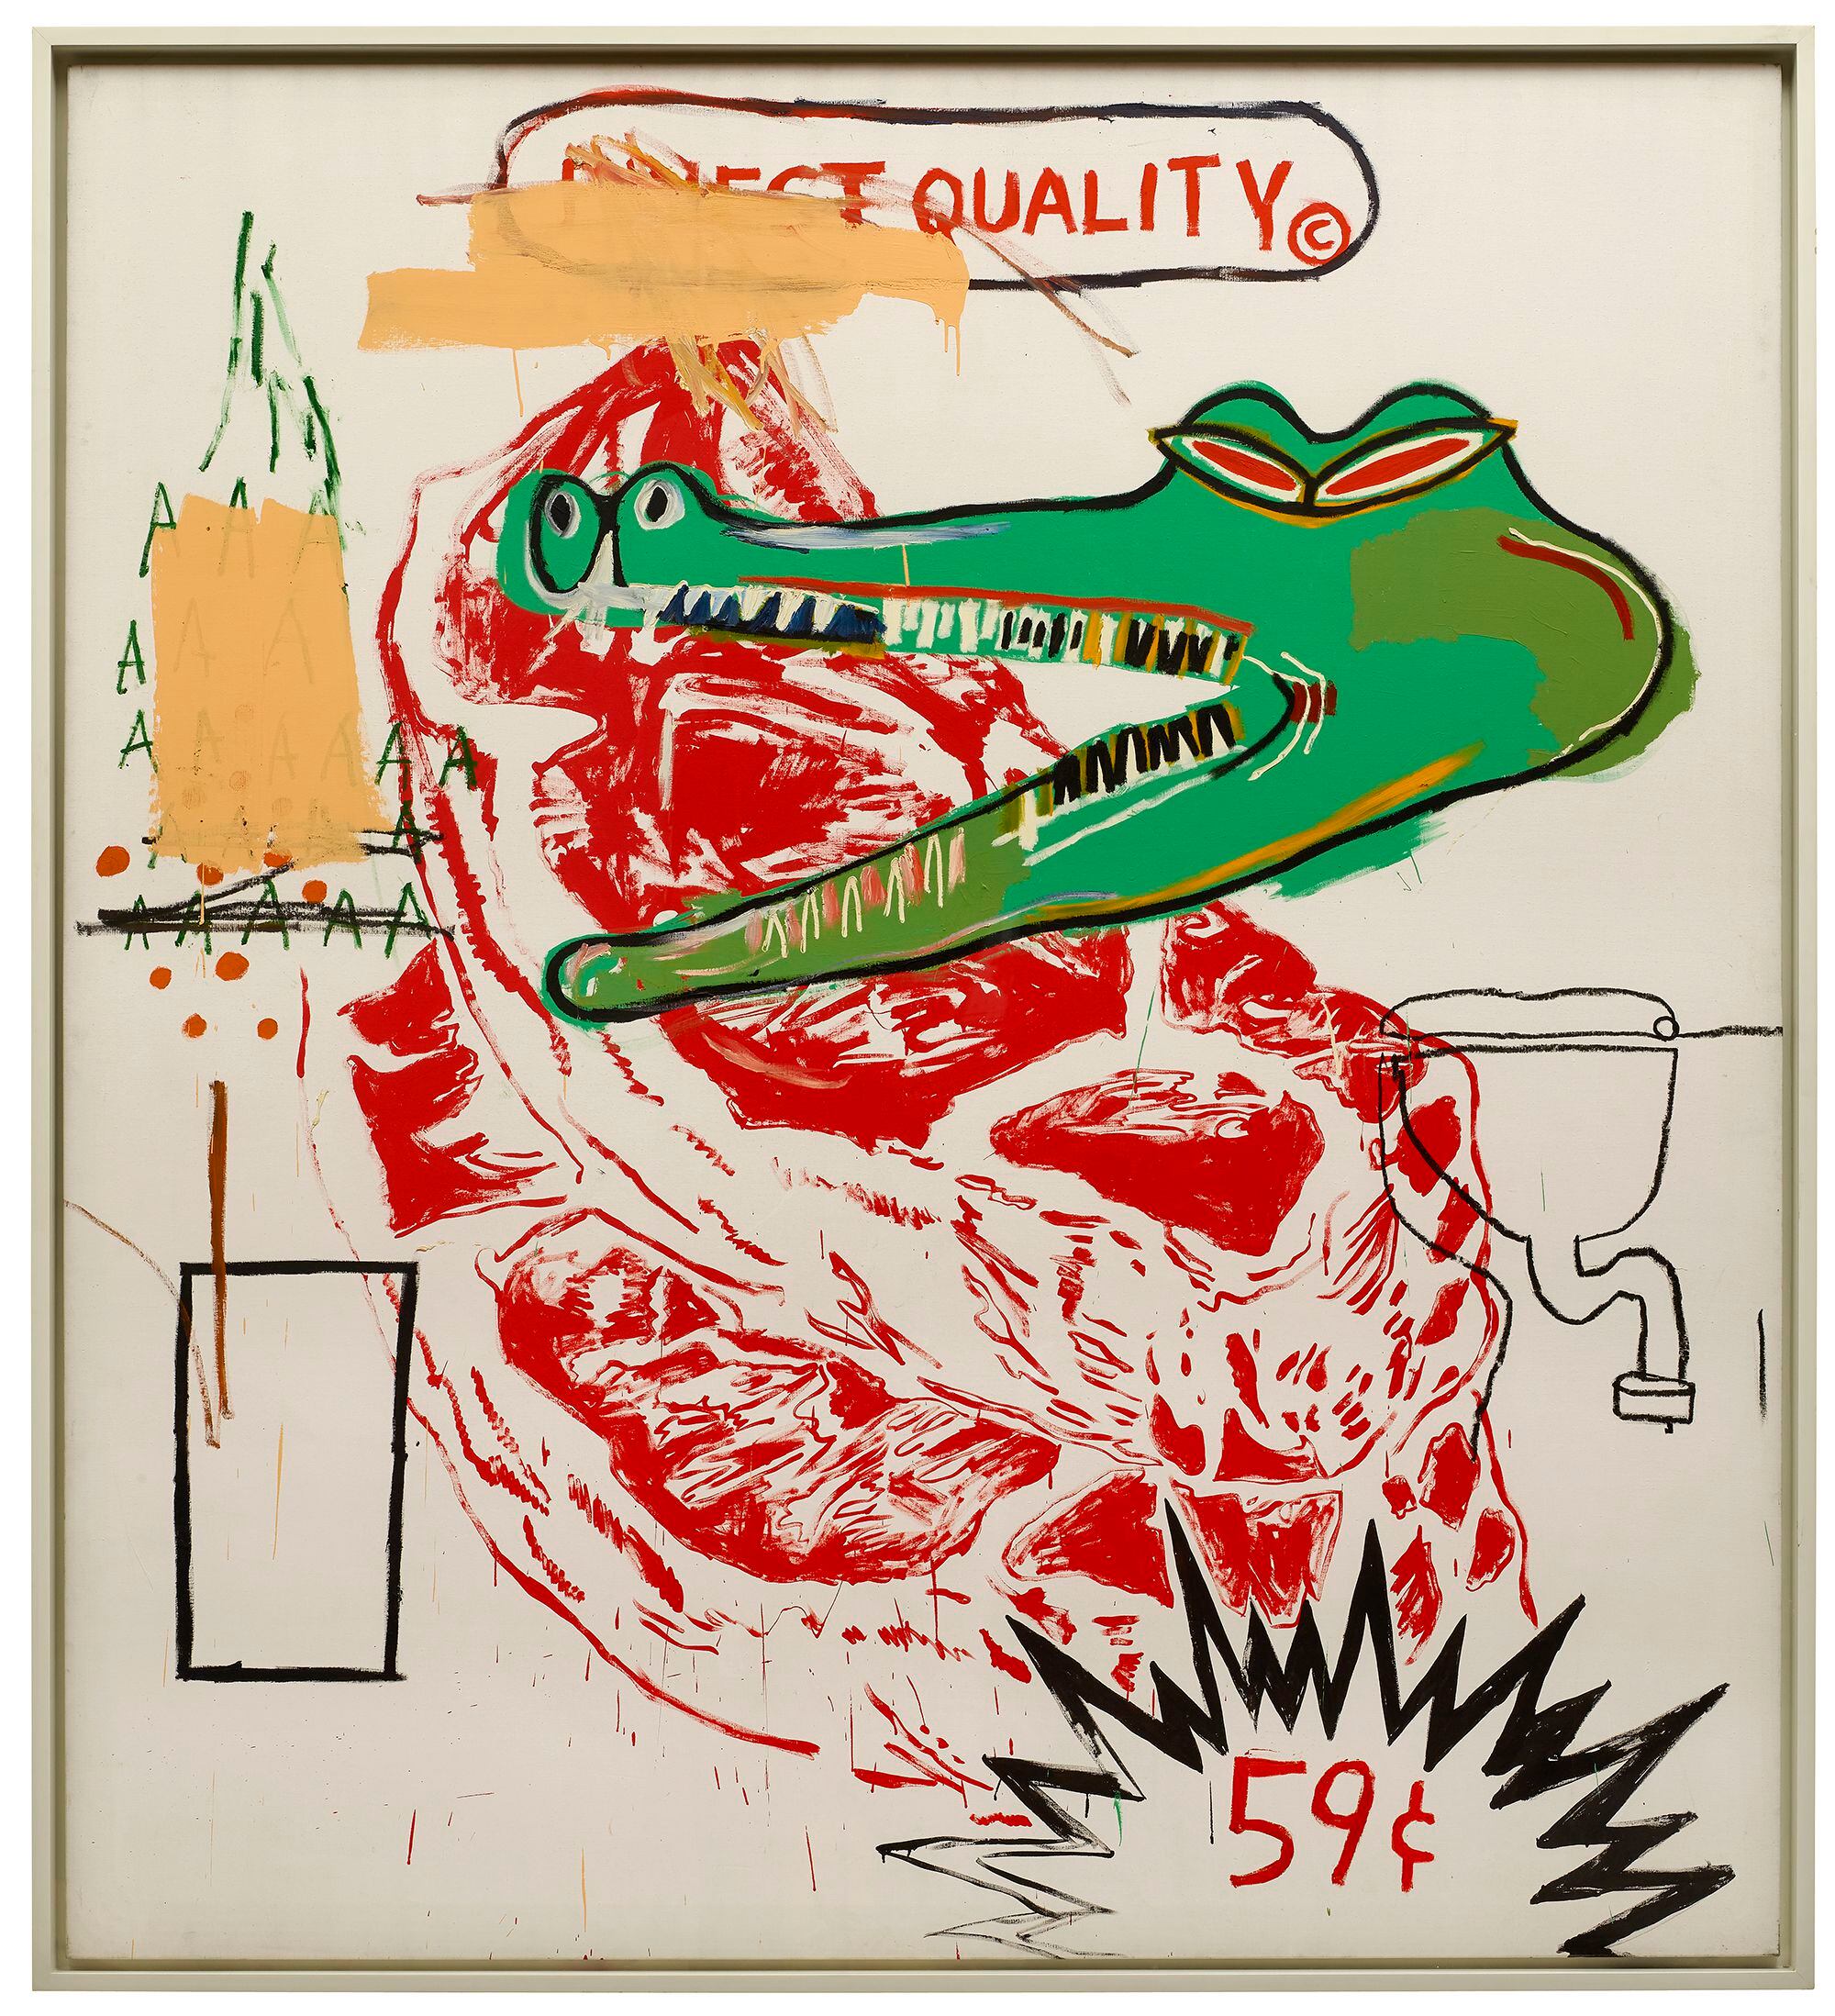 'Quality', una pieza en acrílico que Basquiat y Warhol crearon a cuatro manos en 1984.